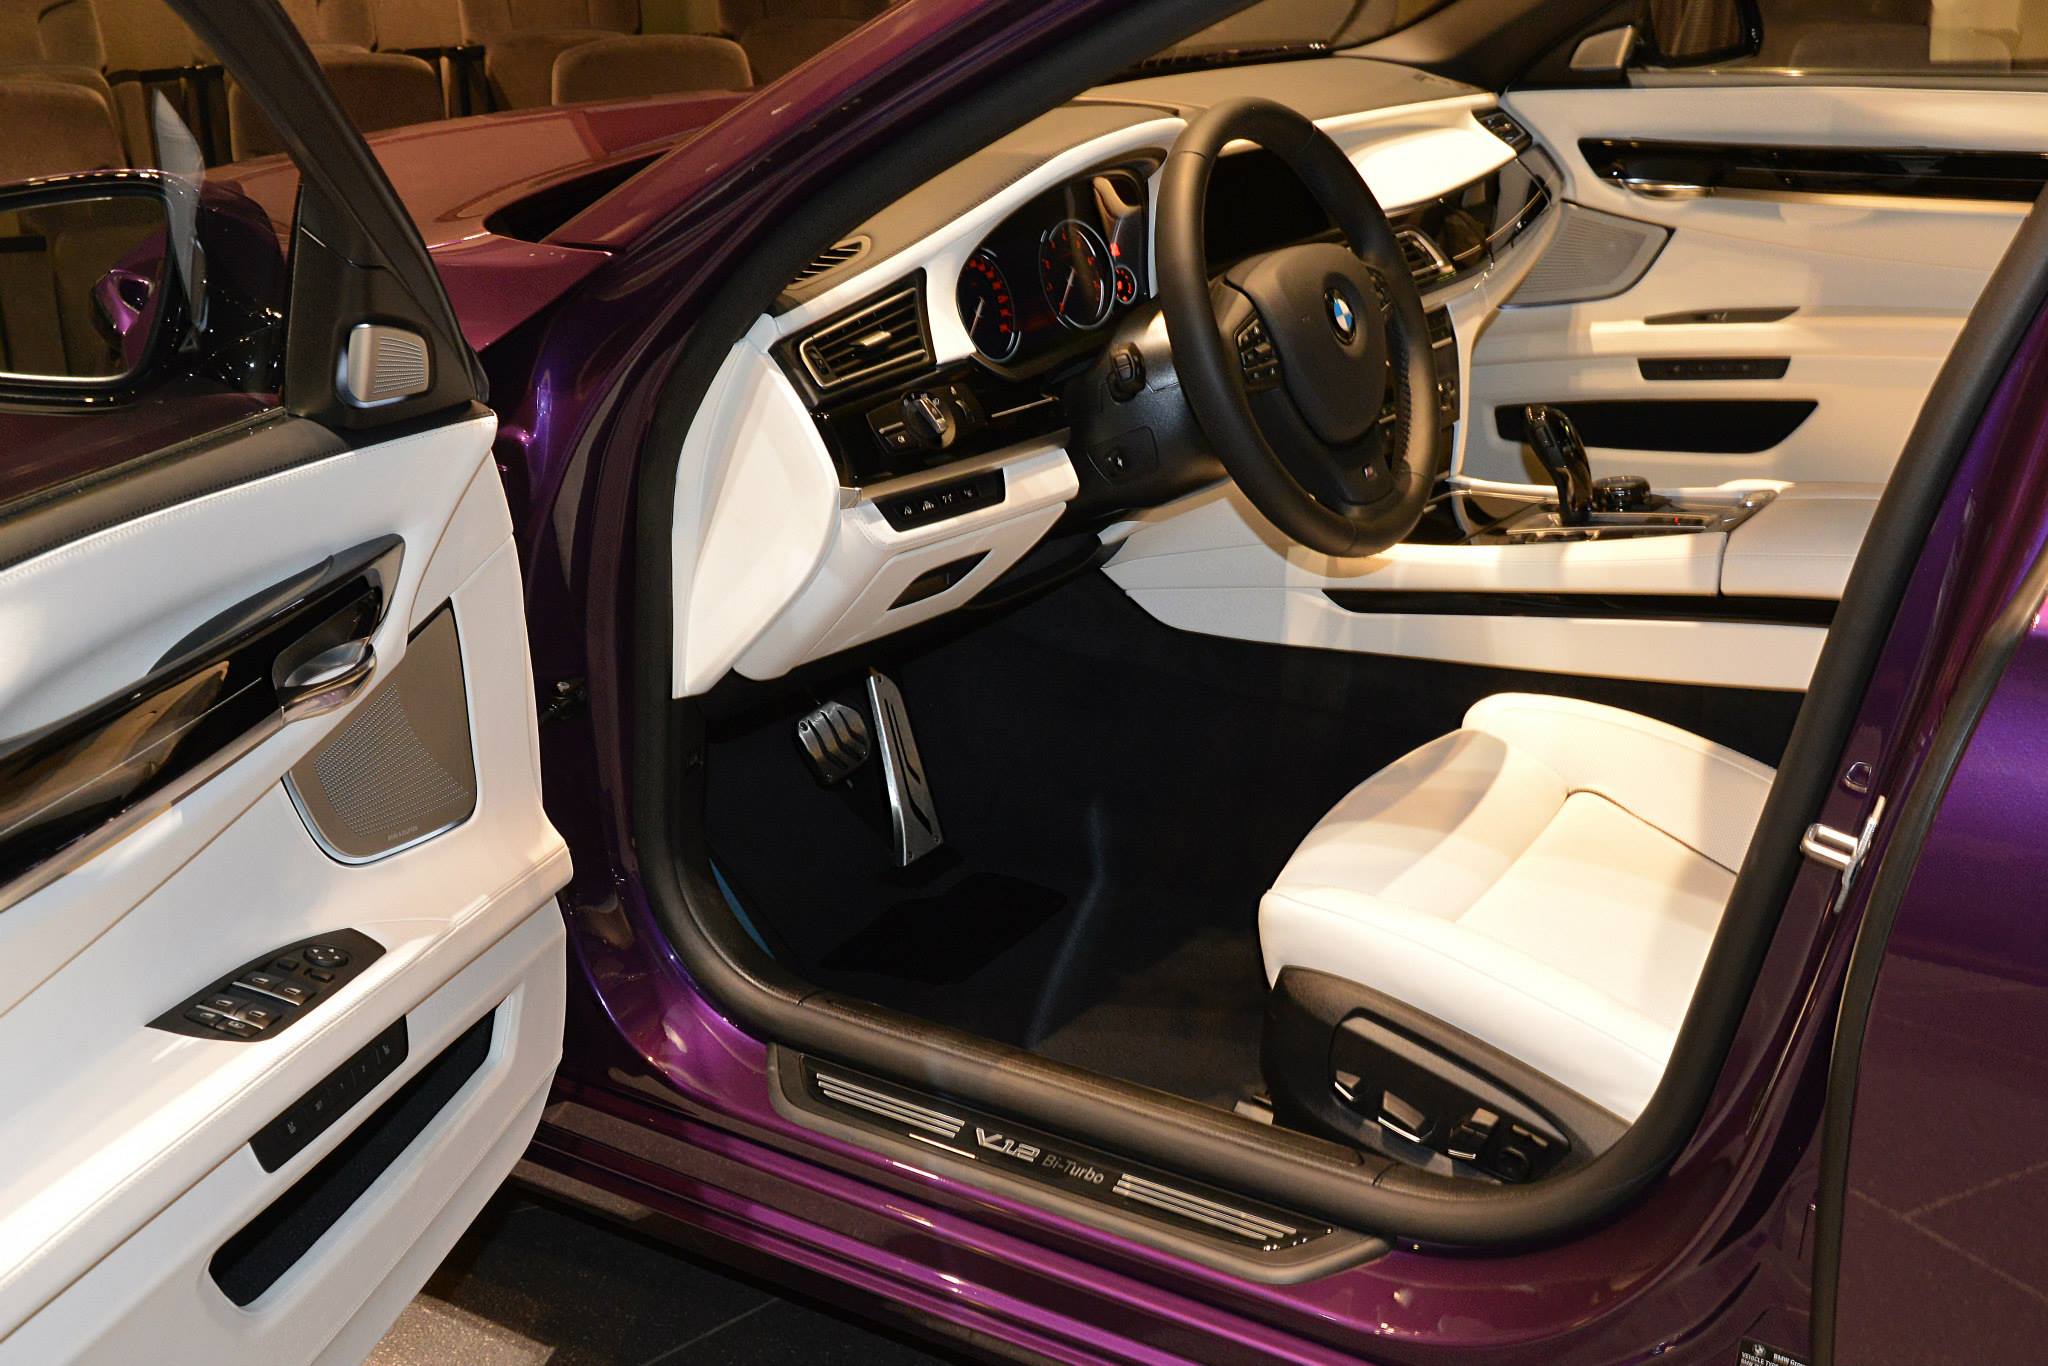 2015 BMW 760Li in Twilight Purple